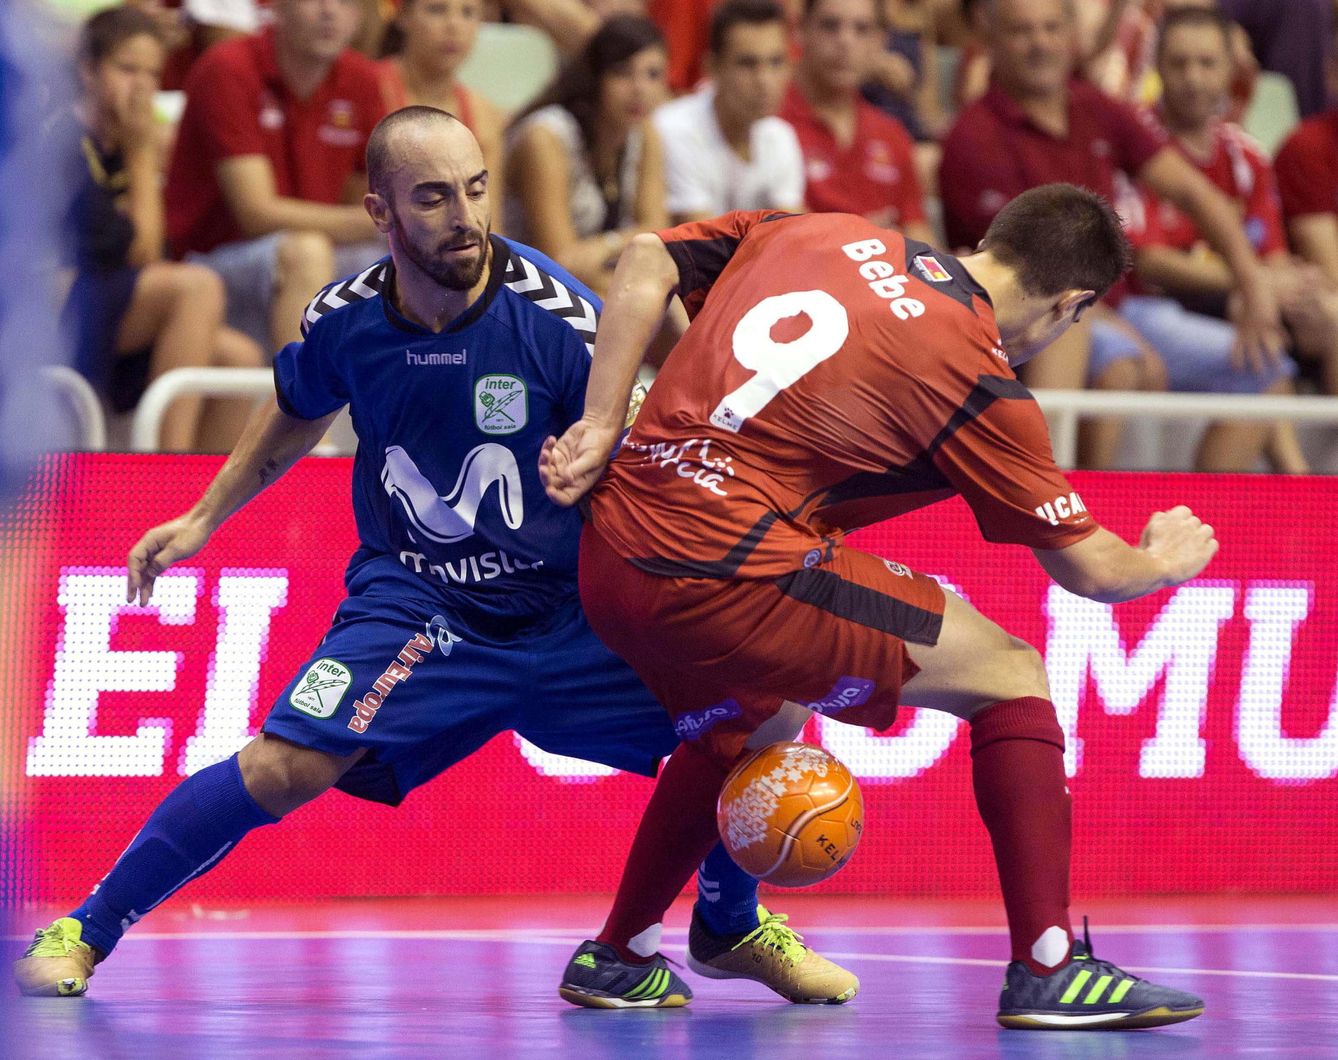 El jugador del Pozo F.S. Bebe intenta controlar el balón ante el jugador del Inter Movistar Ricardinho. (EFE)